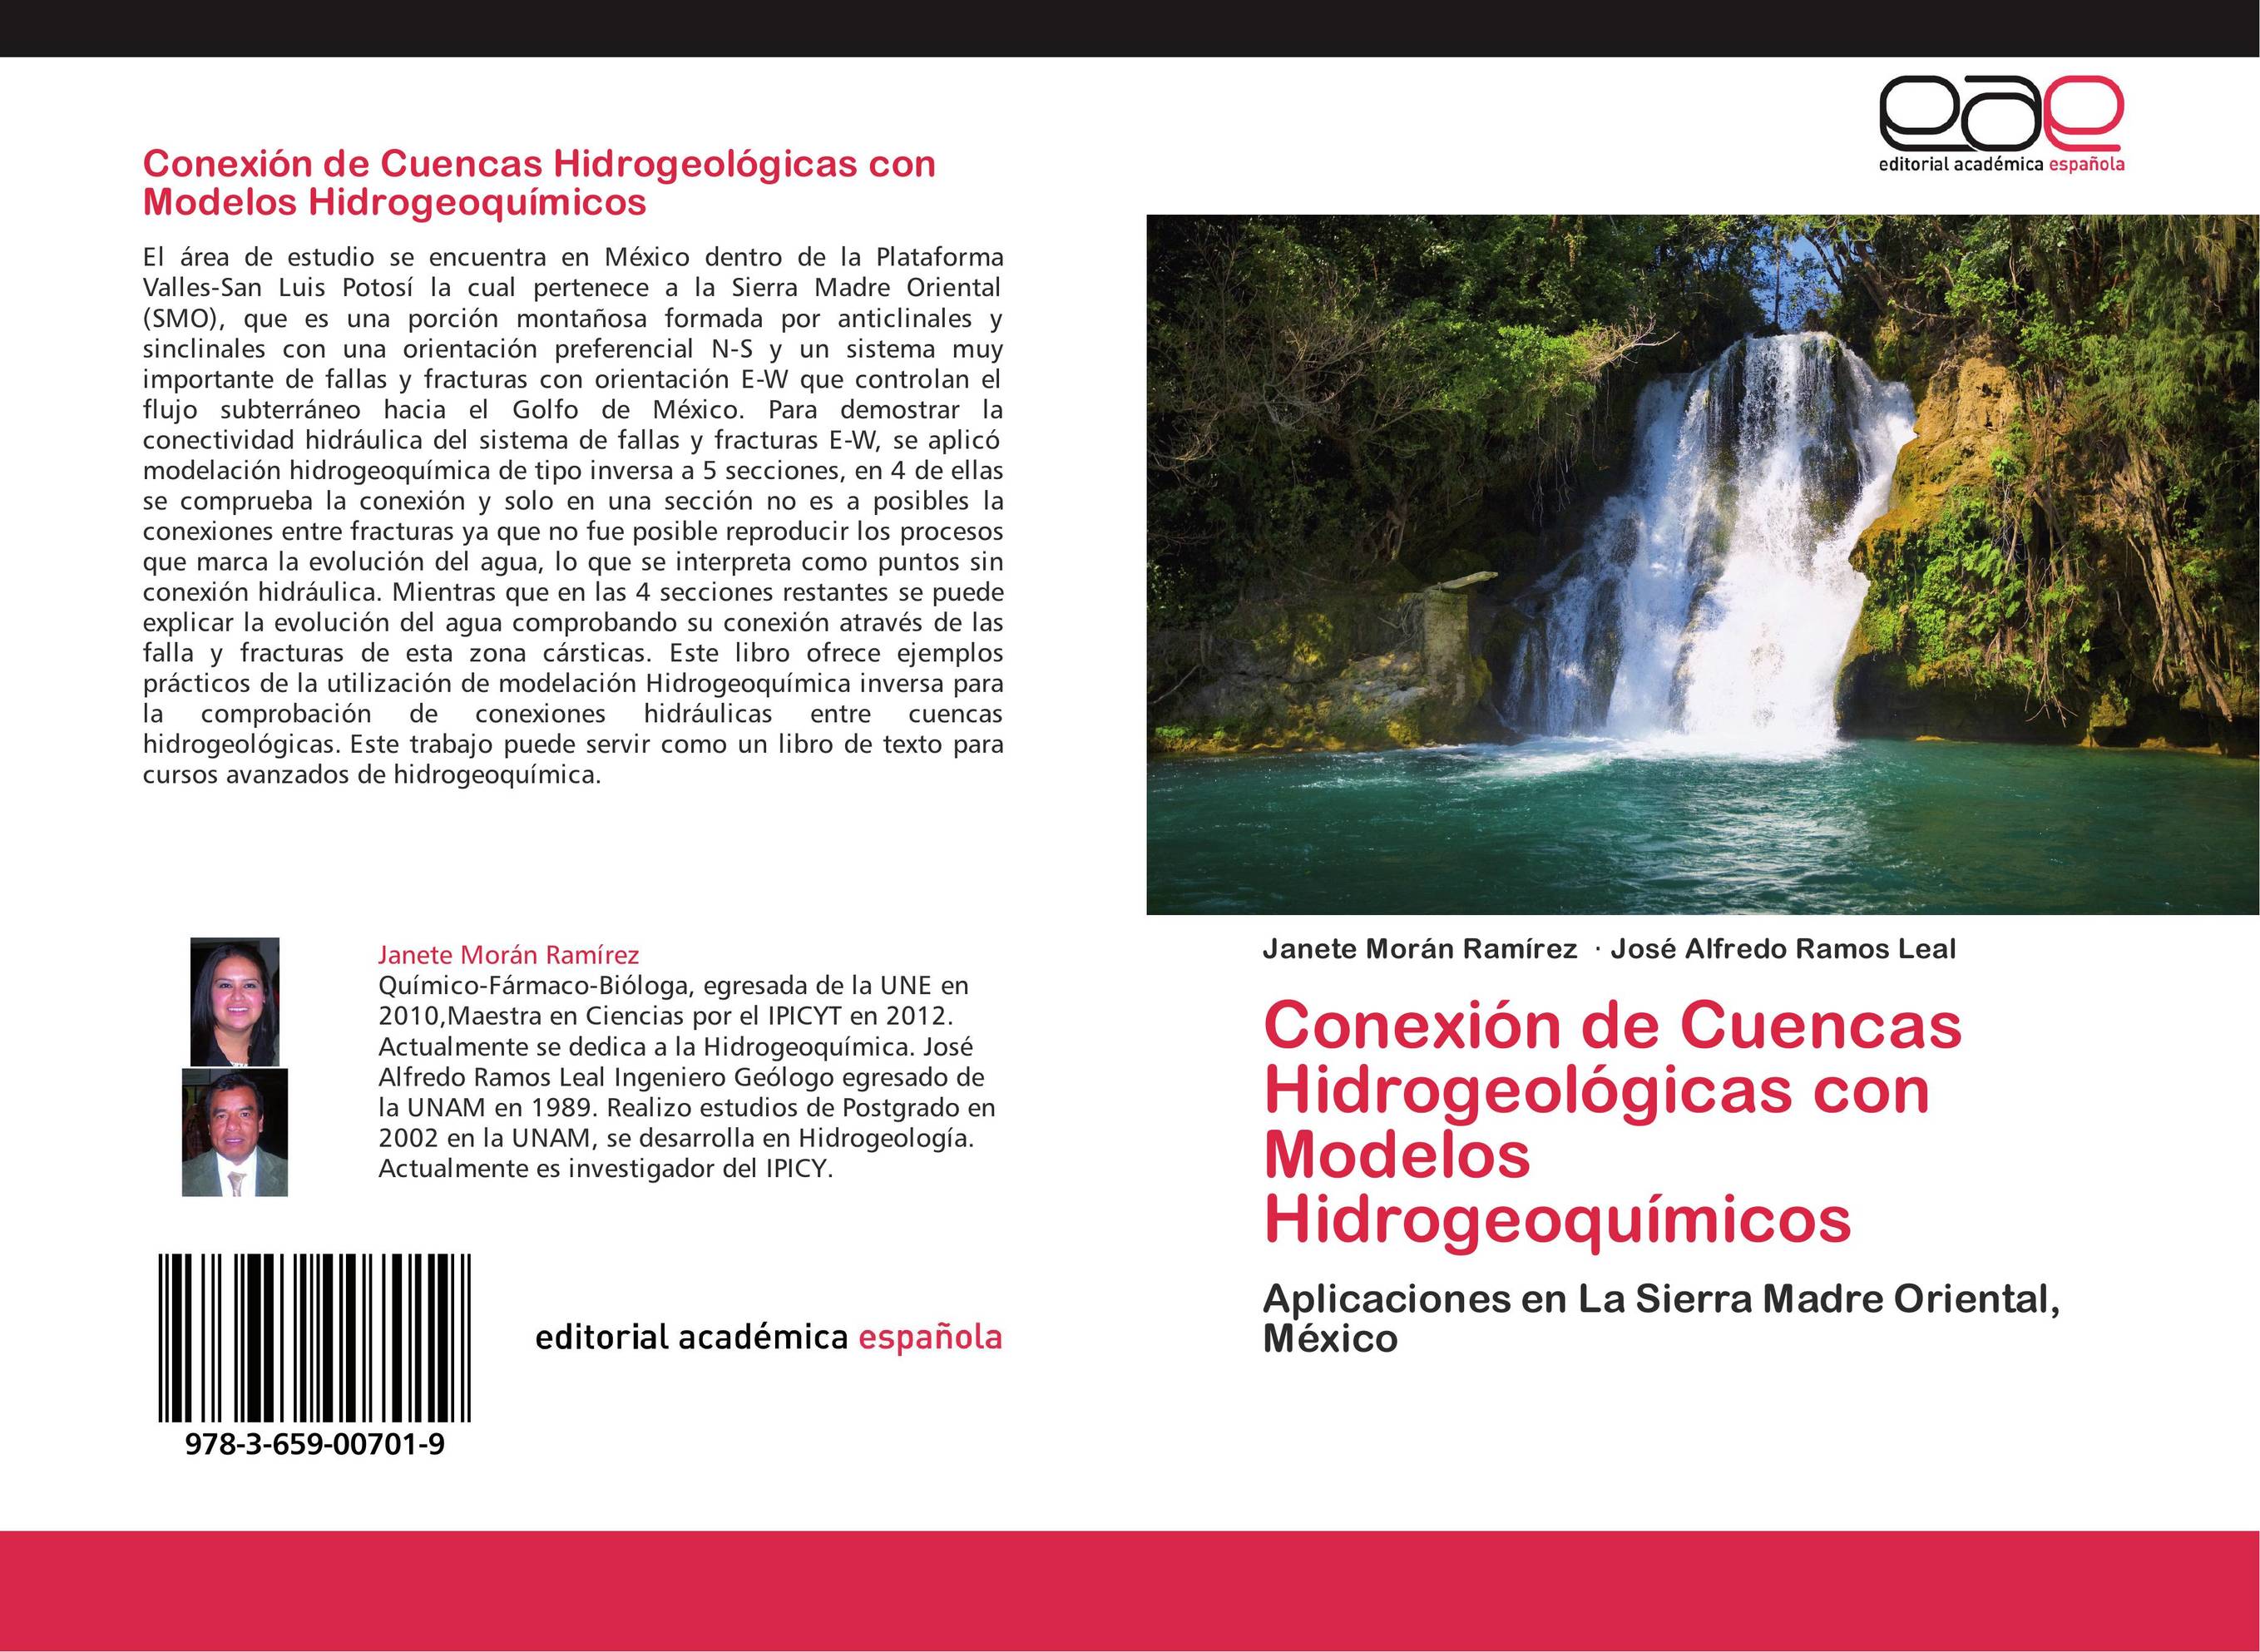 Conexión de Cuencas Hidrogeológicas con Modelos Hidrogeoquímicos